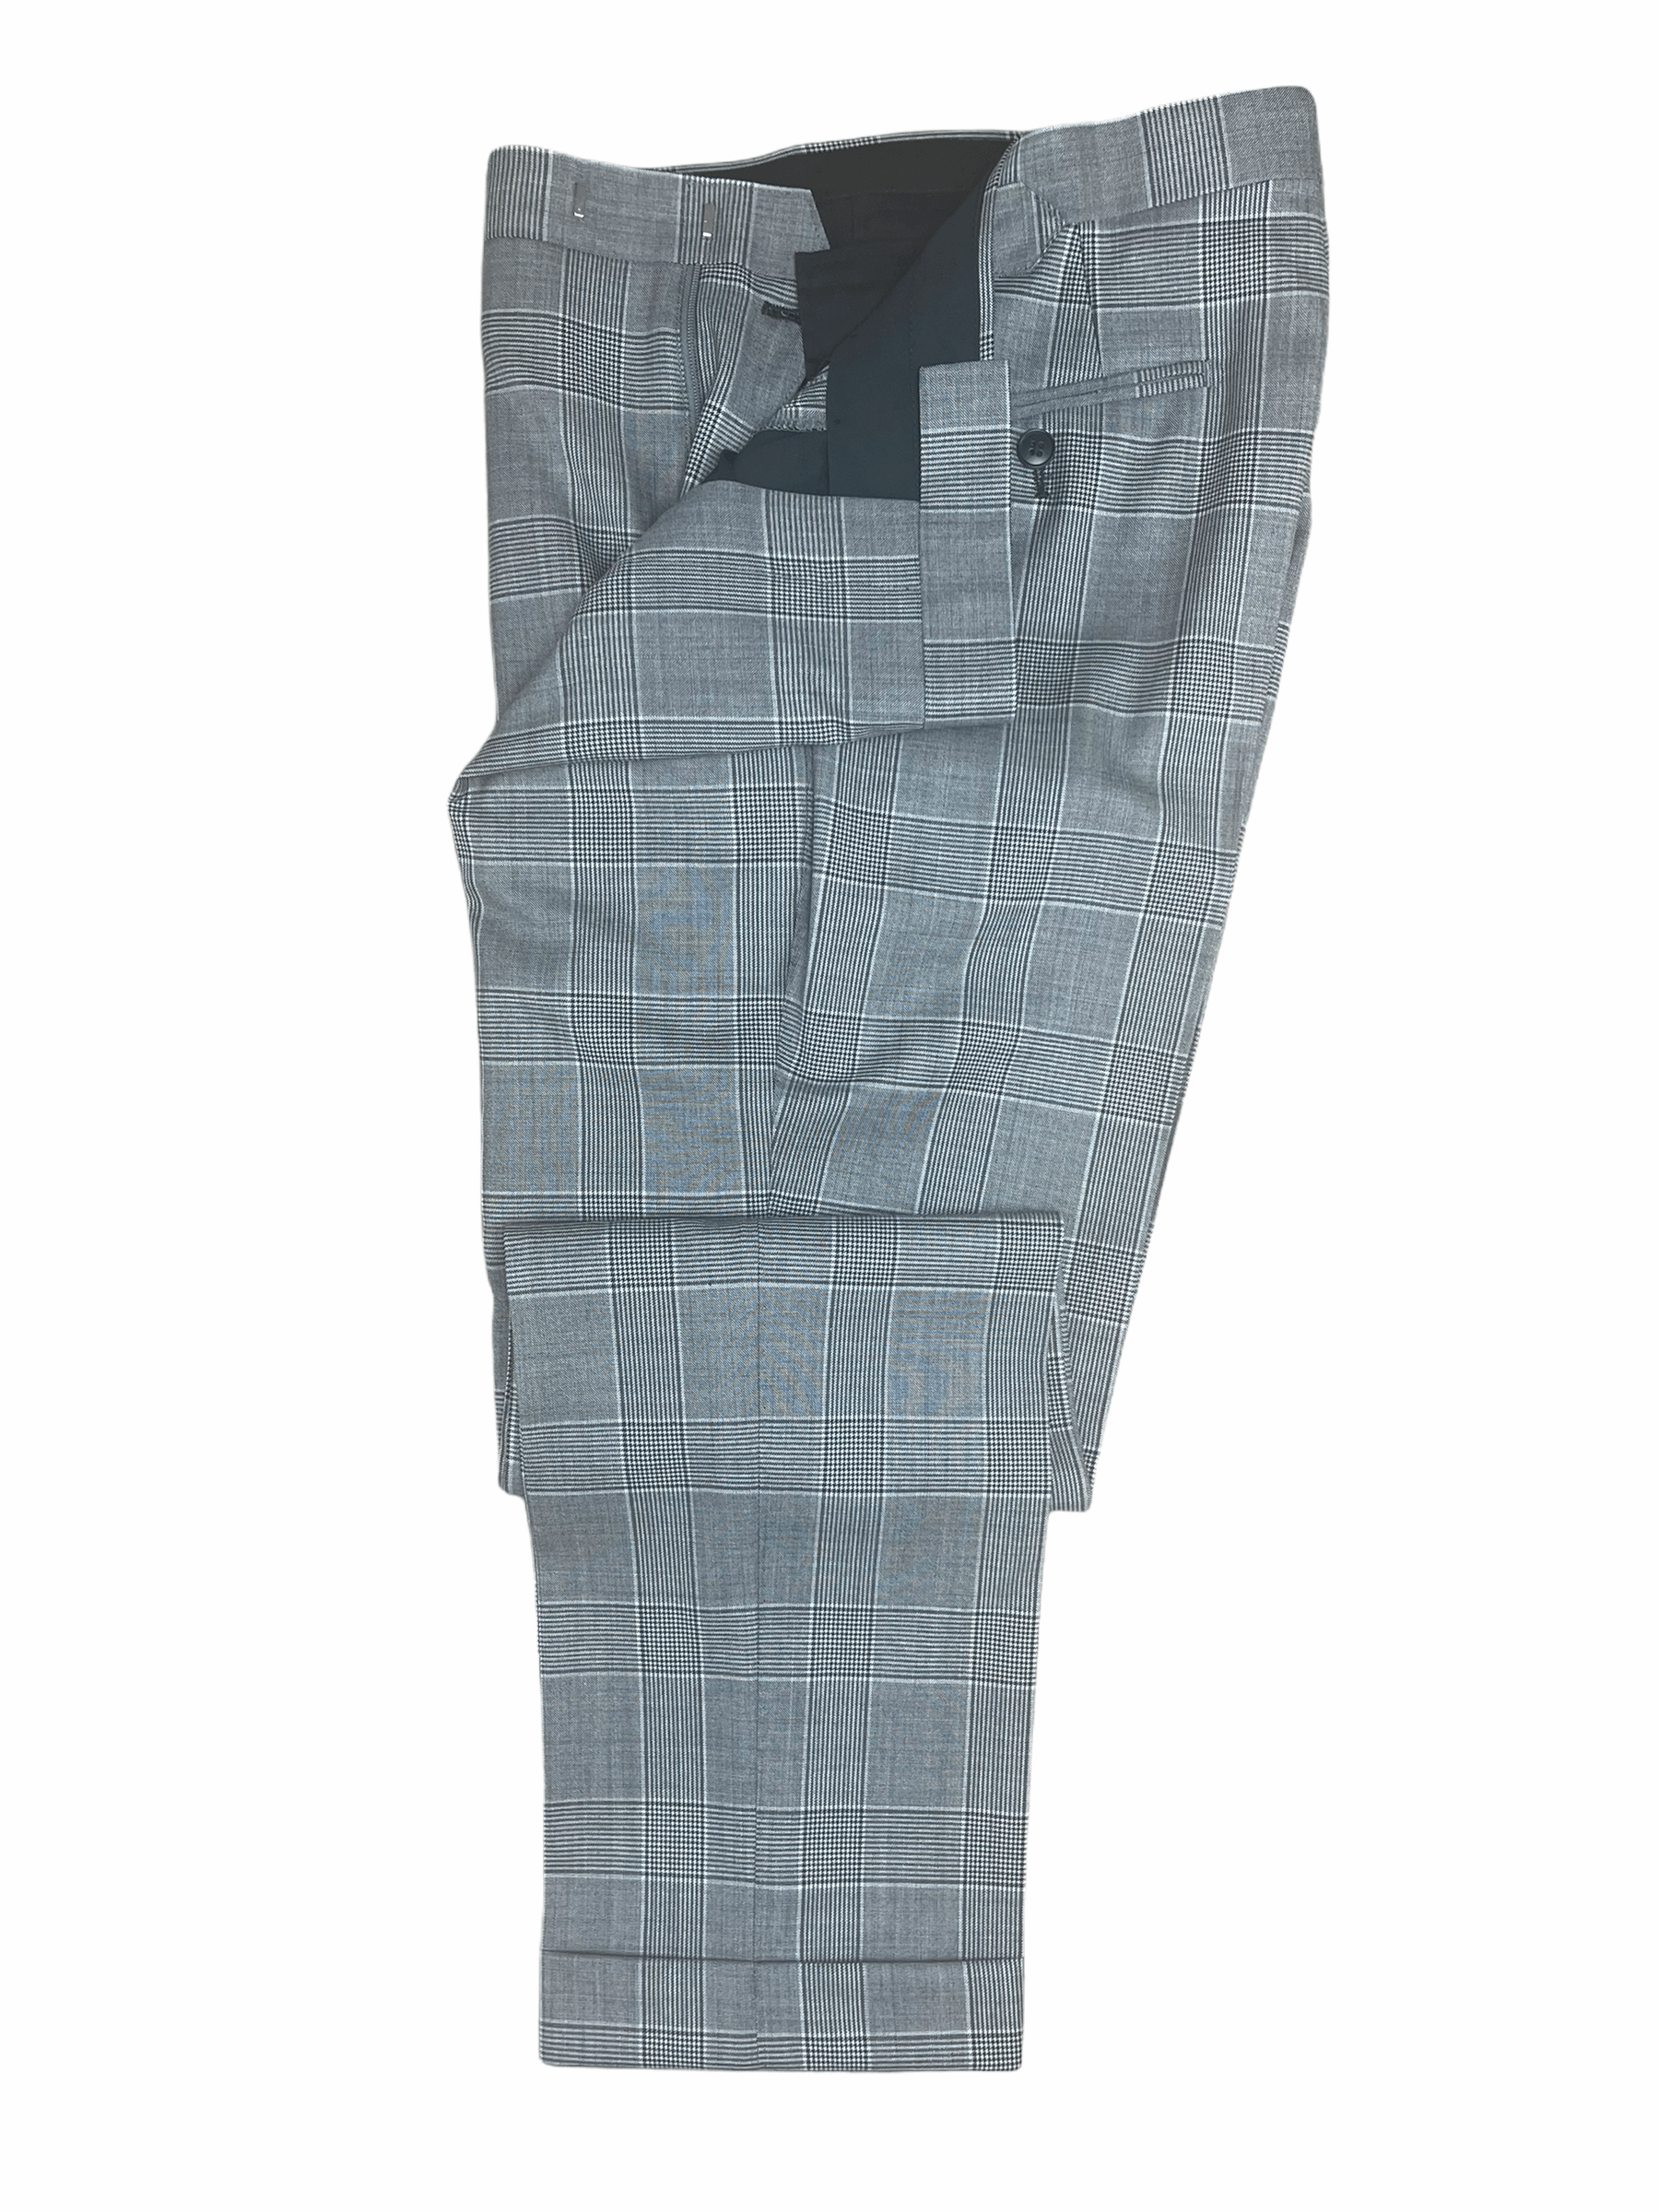 Atelier Munro Grey Glen Plaid 3 Piece Full Suit 38R – Genuine Design Luxury  Consignment